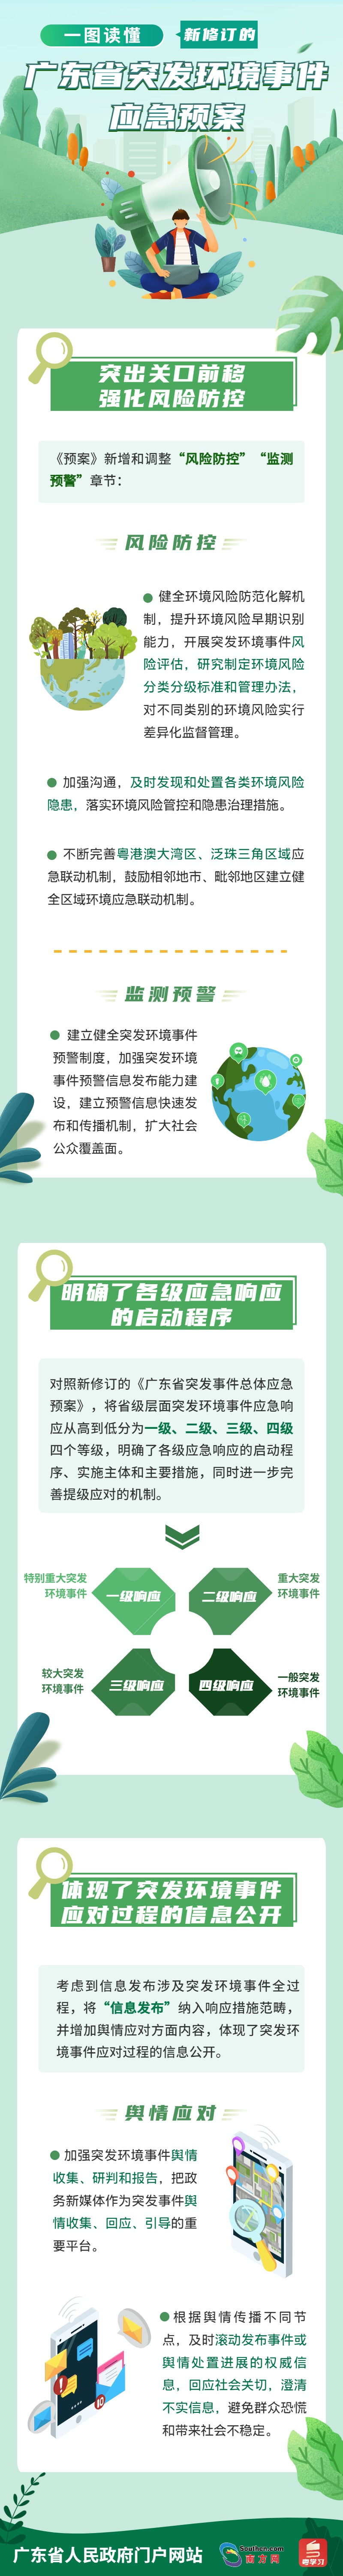 一图读懂新修订的广东省突发环境事件应急预案